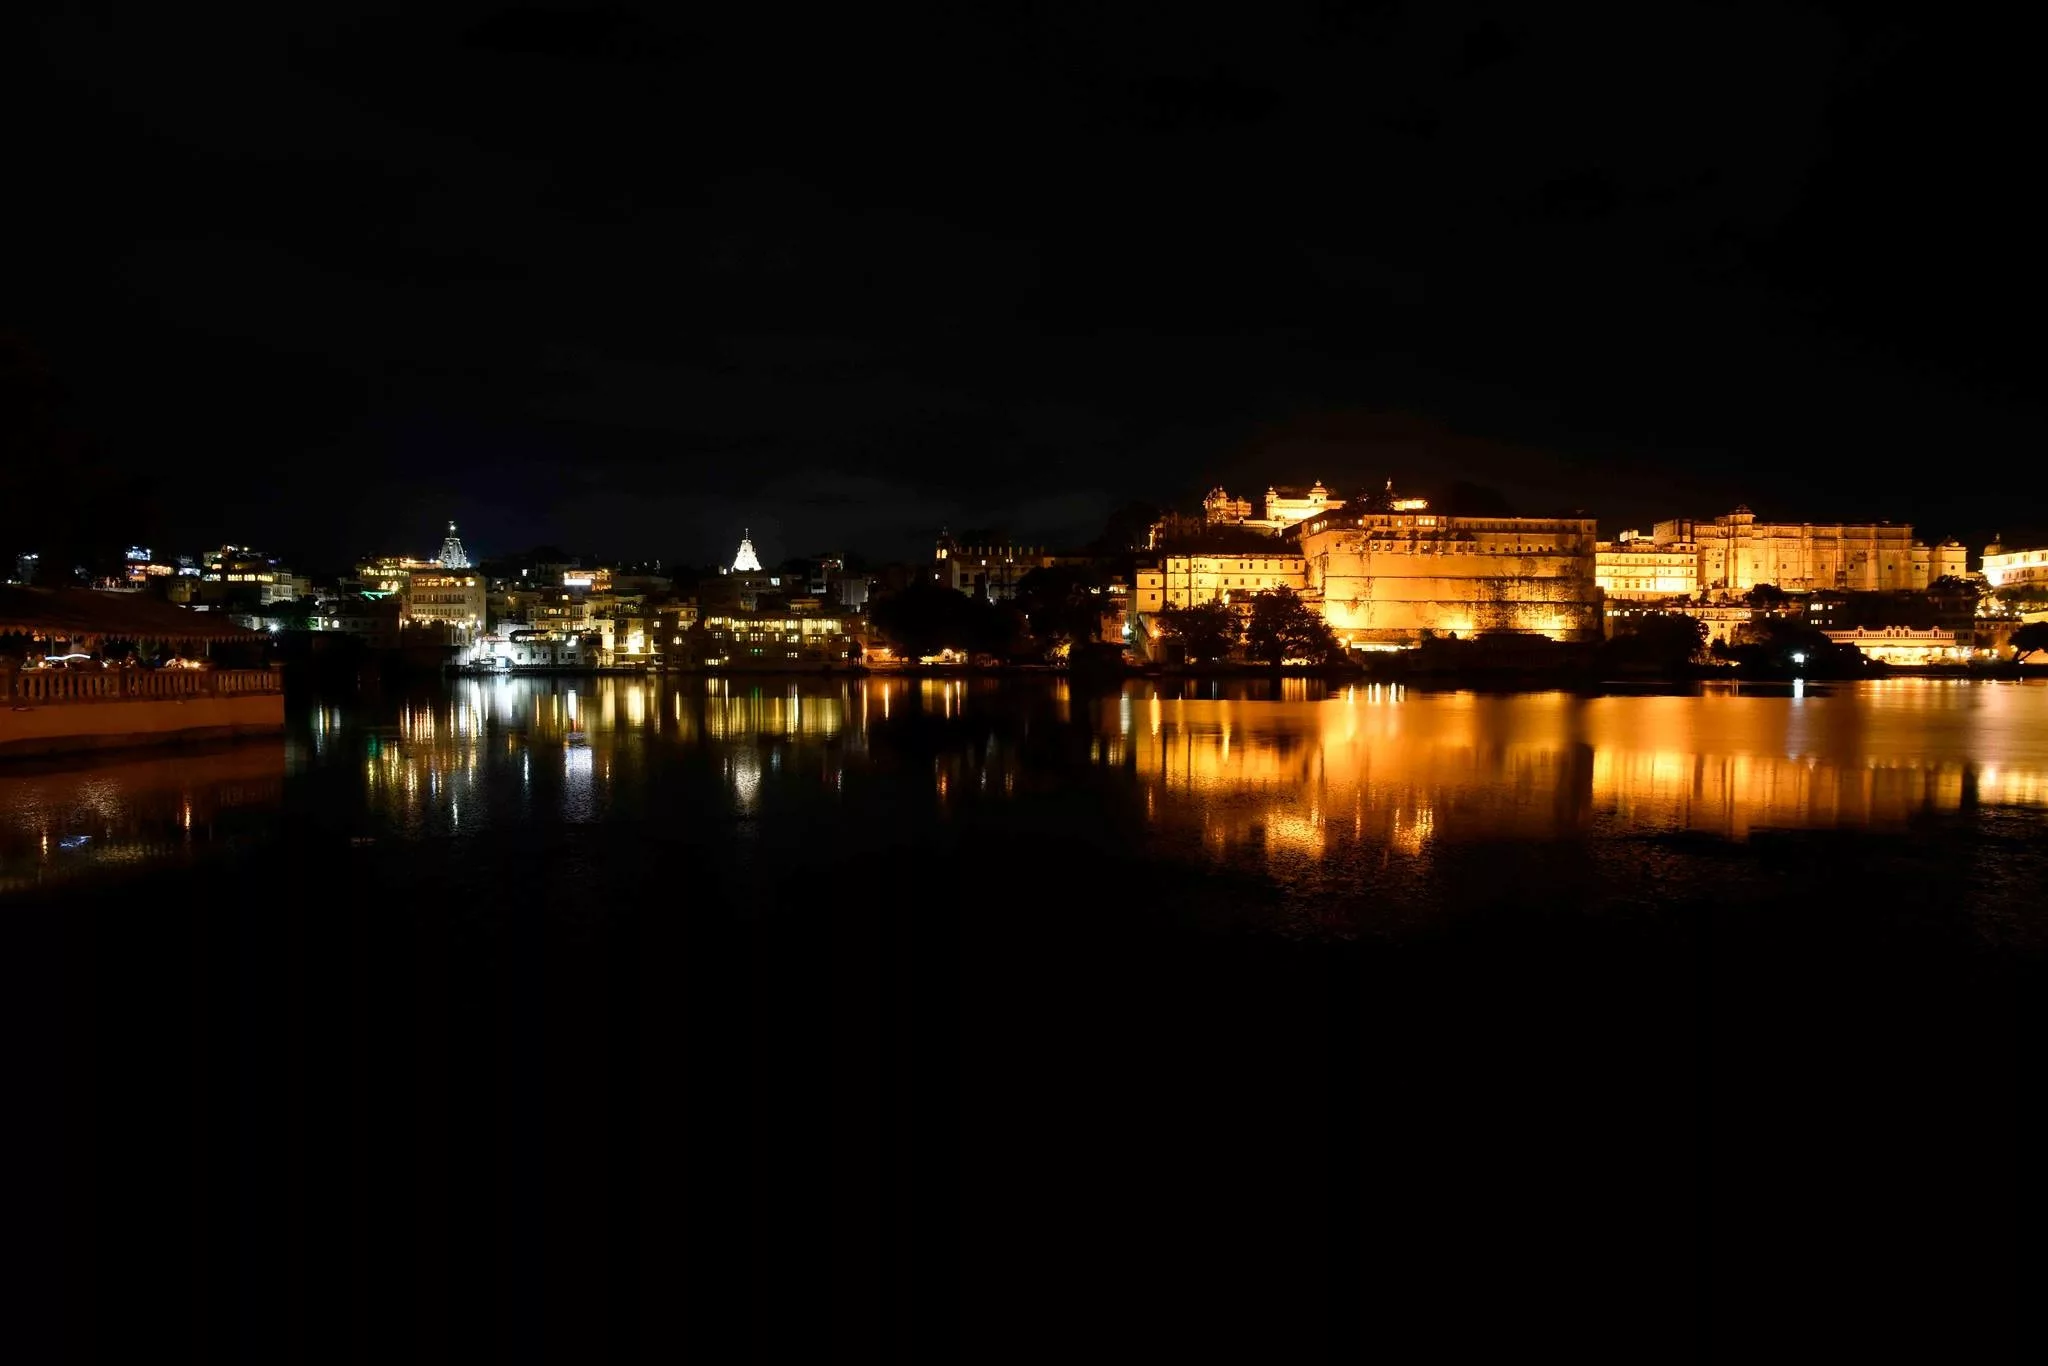 Udaipur Palace at night, India